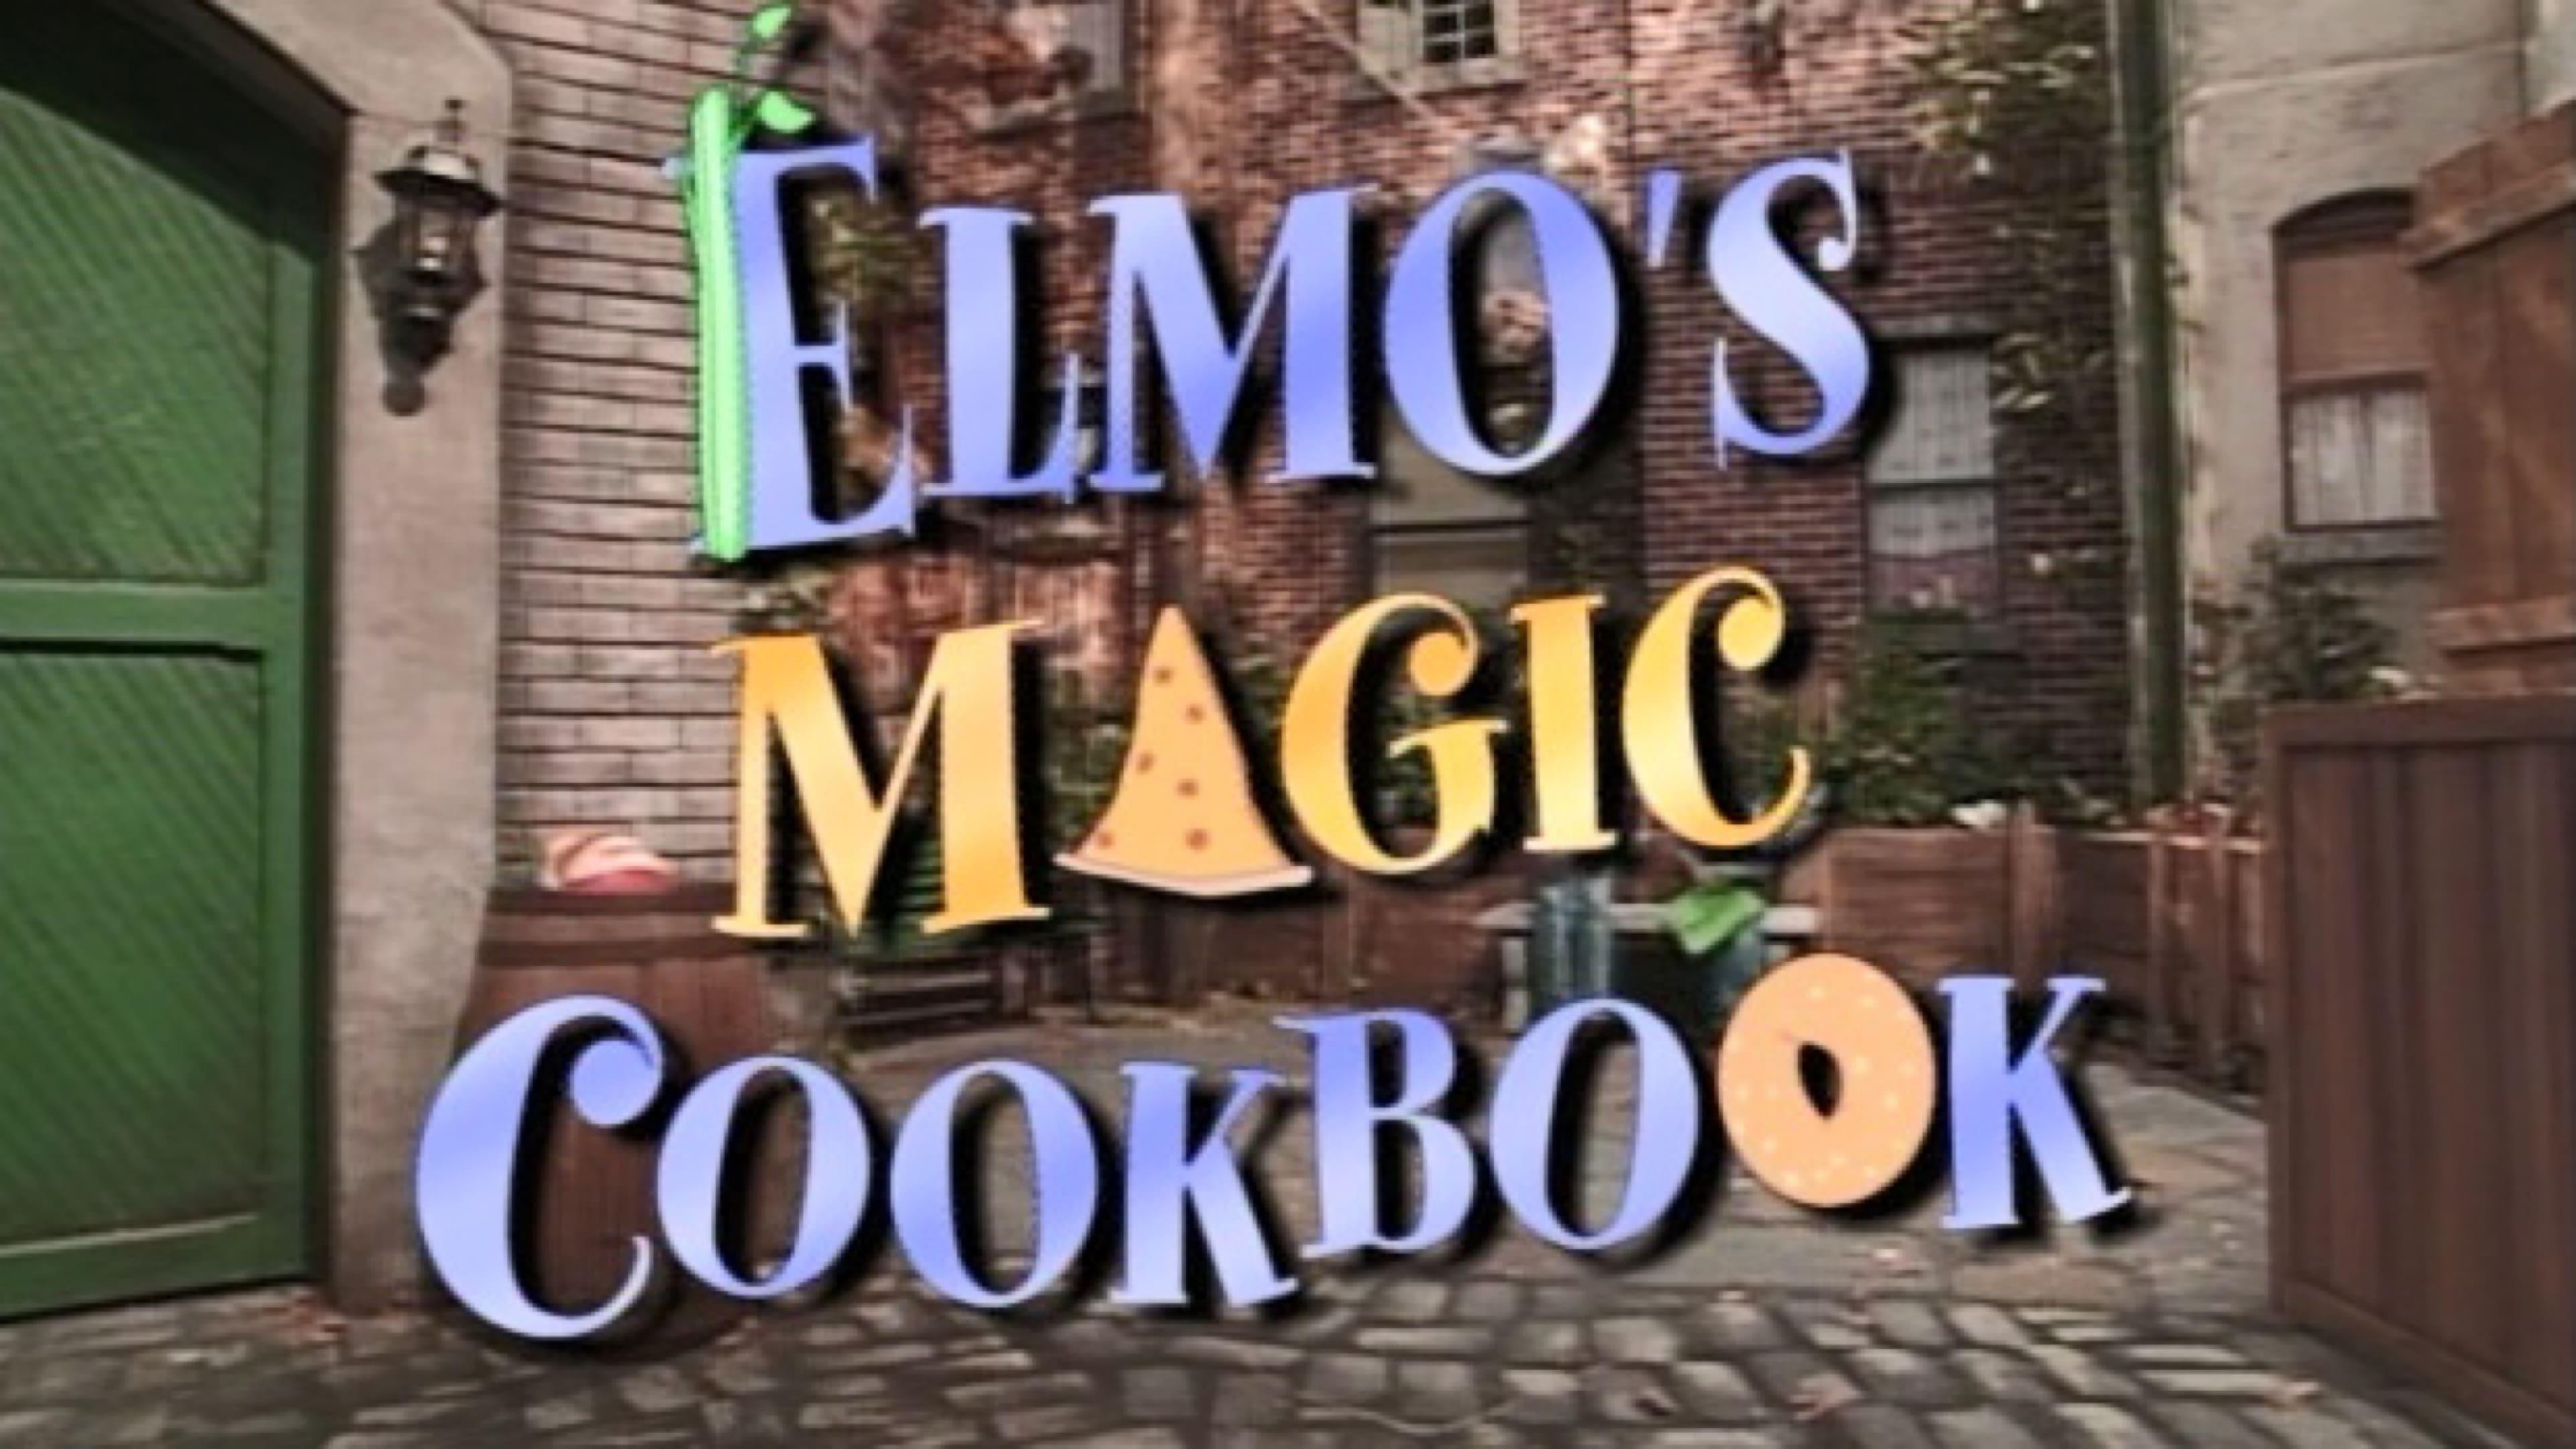 Elmo's Magic Cookbook backdrop